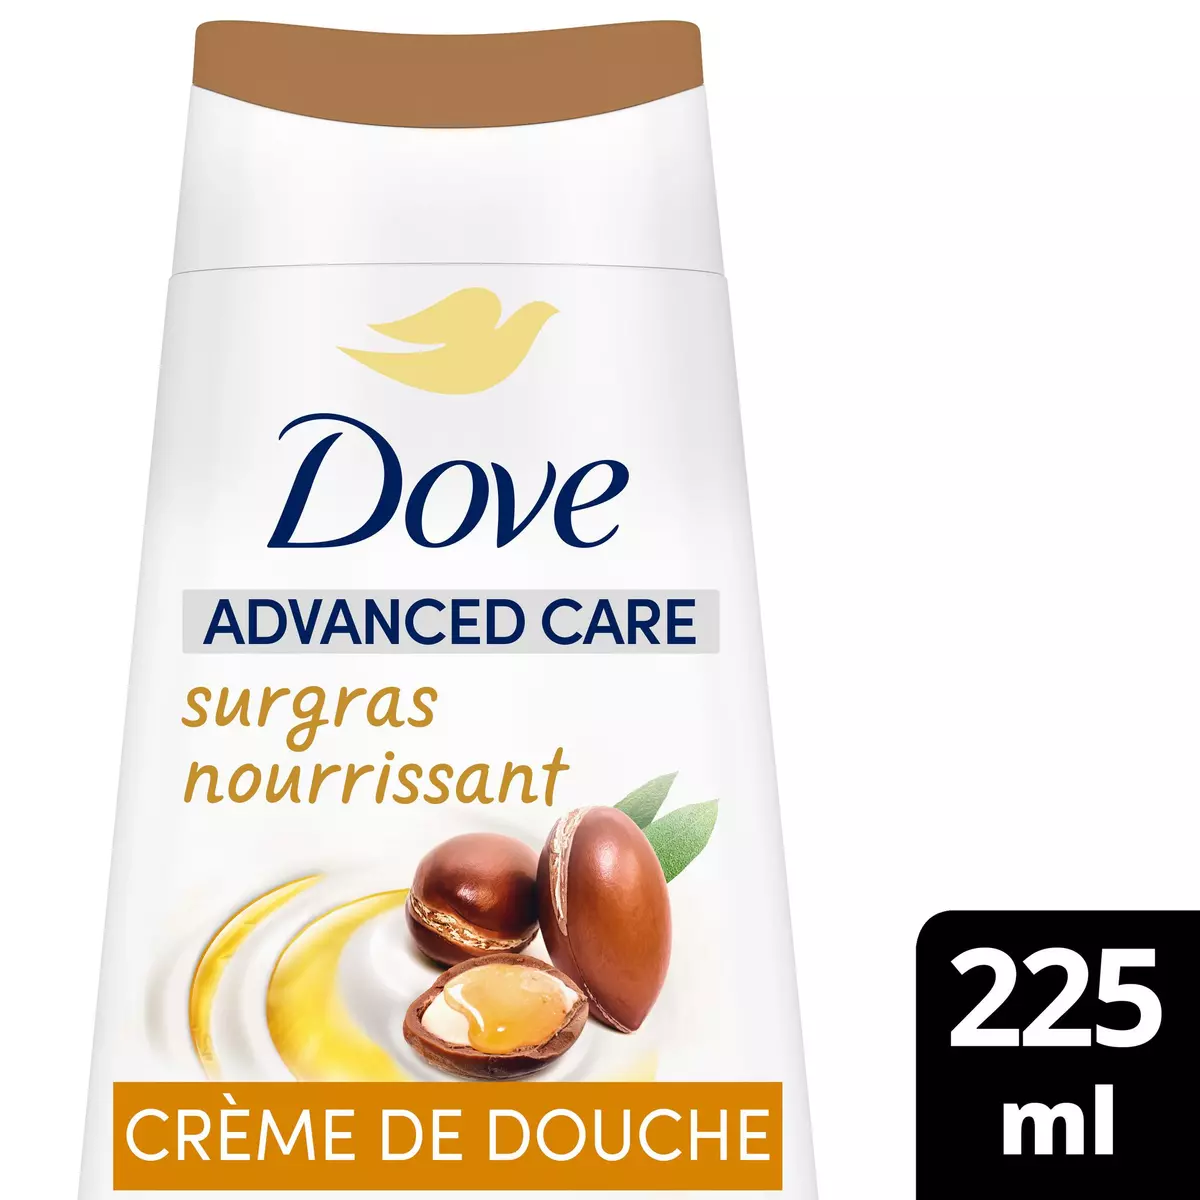 DOVE Advanced care Crème de douche surgras nourrissant argan 225ml